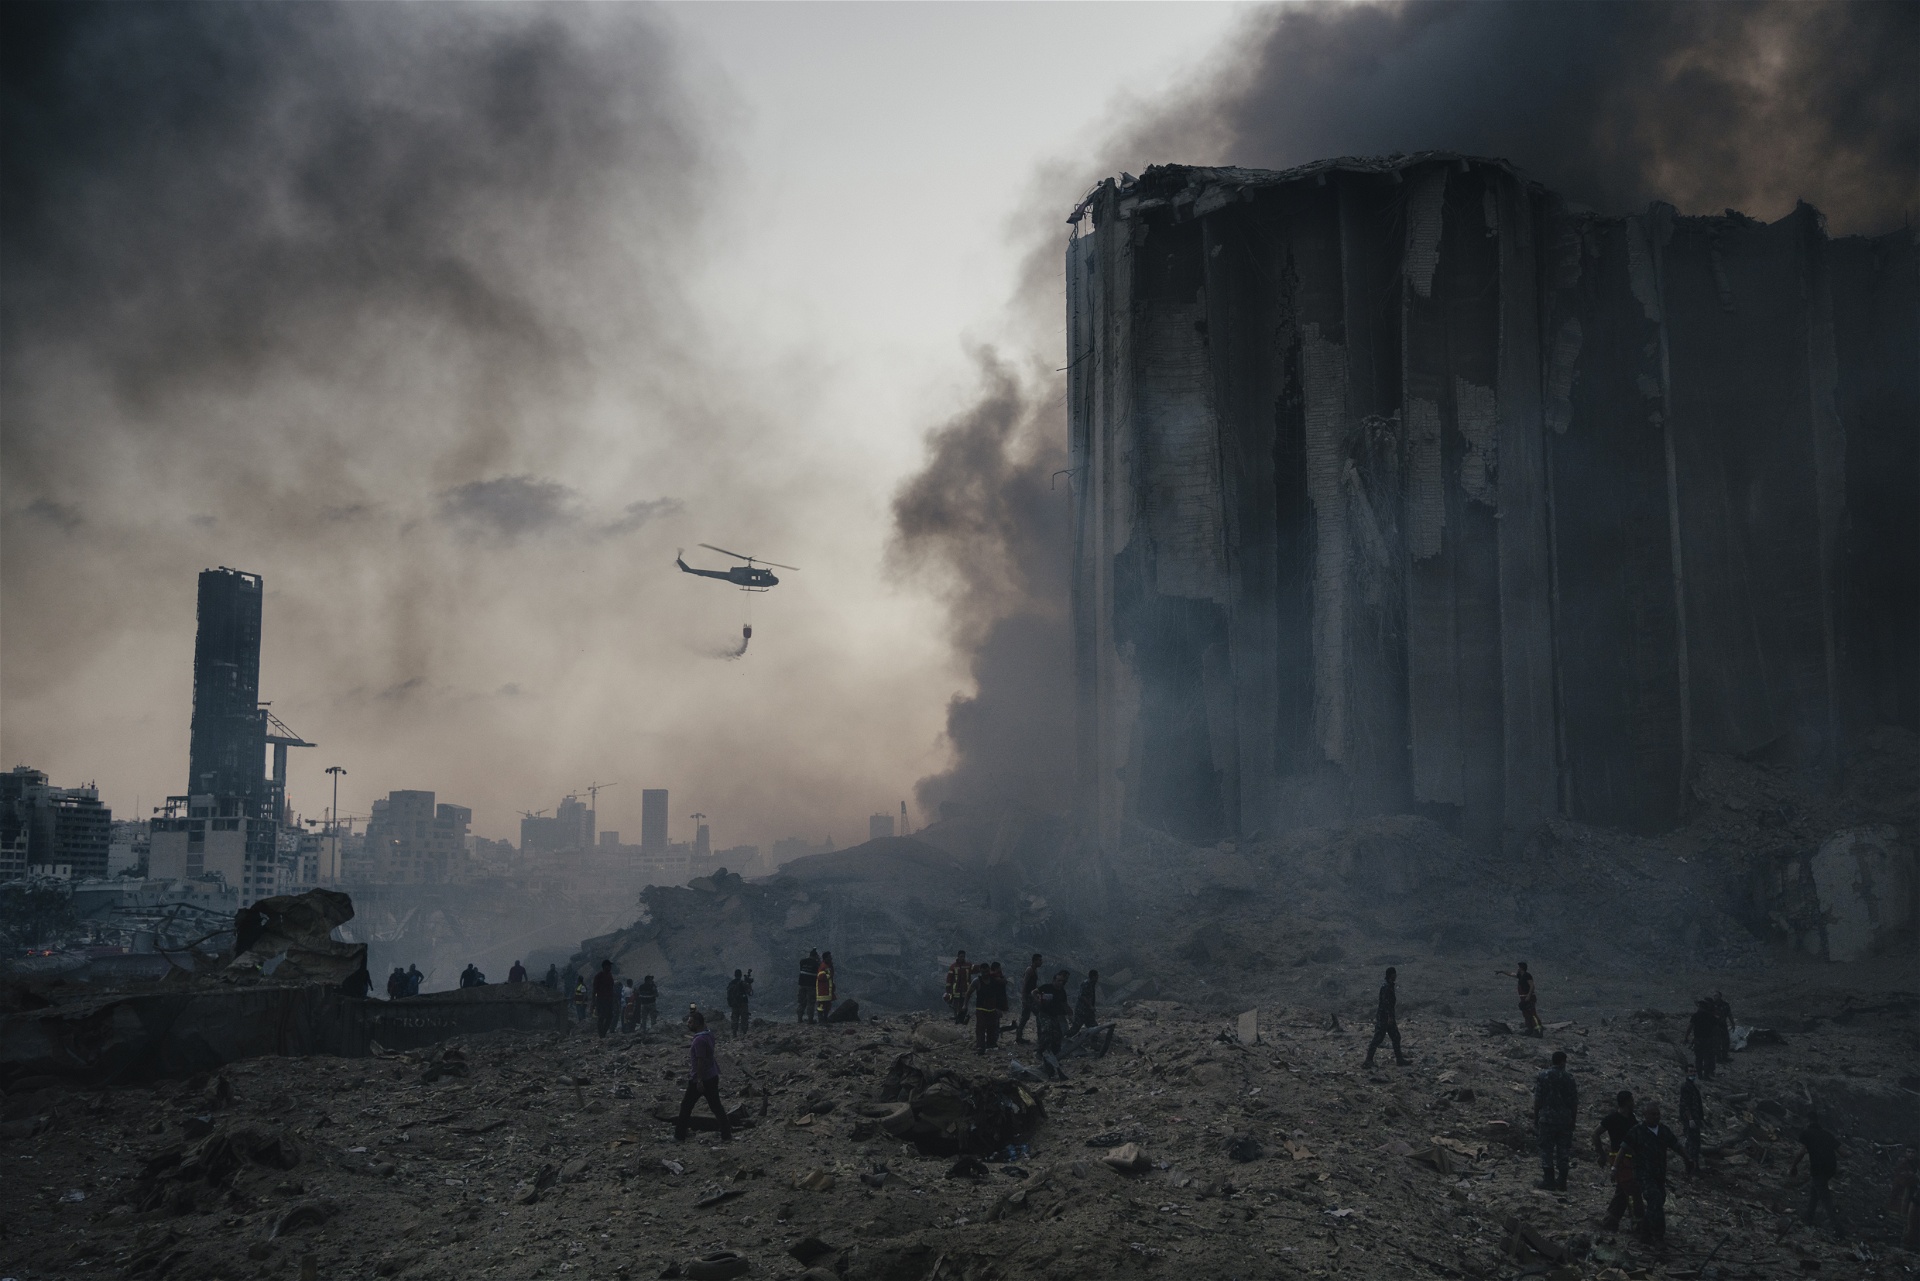 En brandsläckarhelikopter kämpar vid rasmassorna av den stora explosionen i Beiruts hamn sommaren 2020.